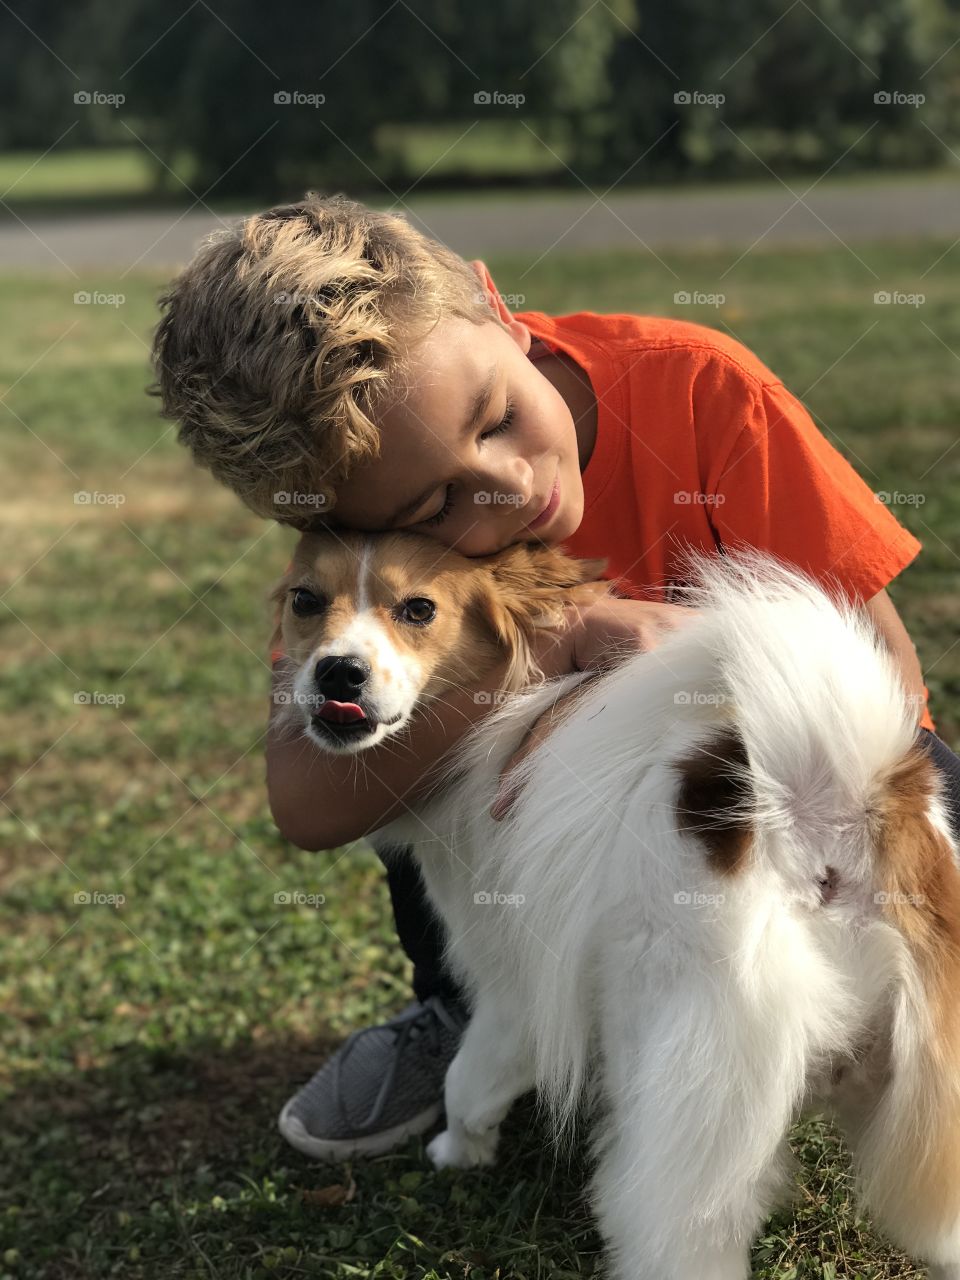 A boy & his dog